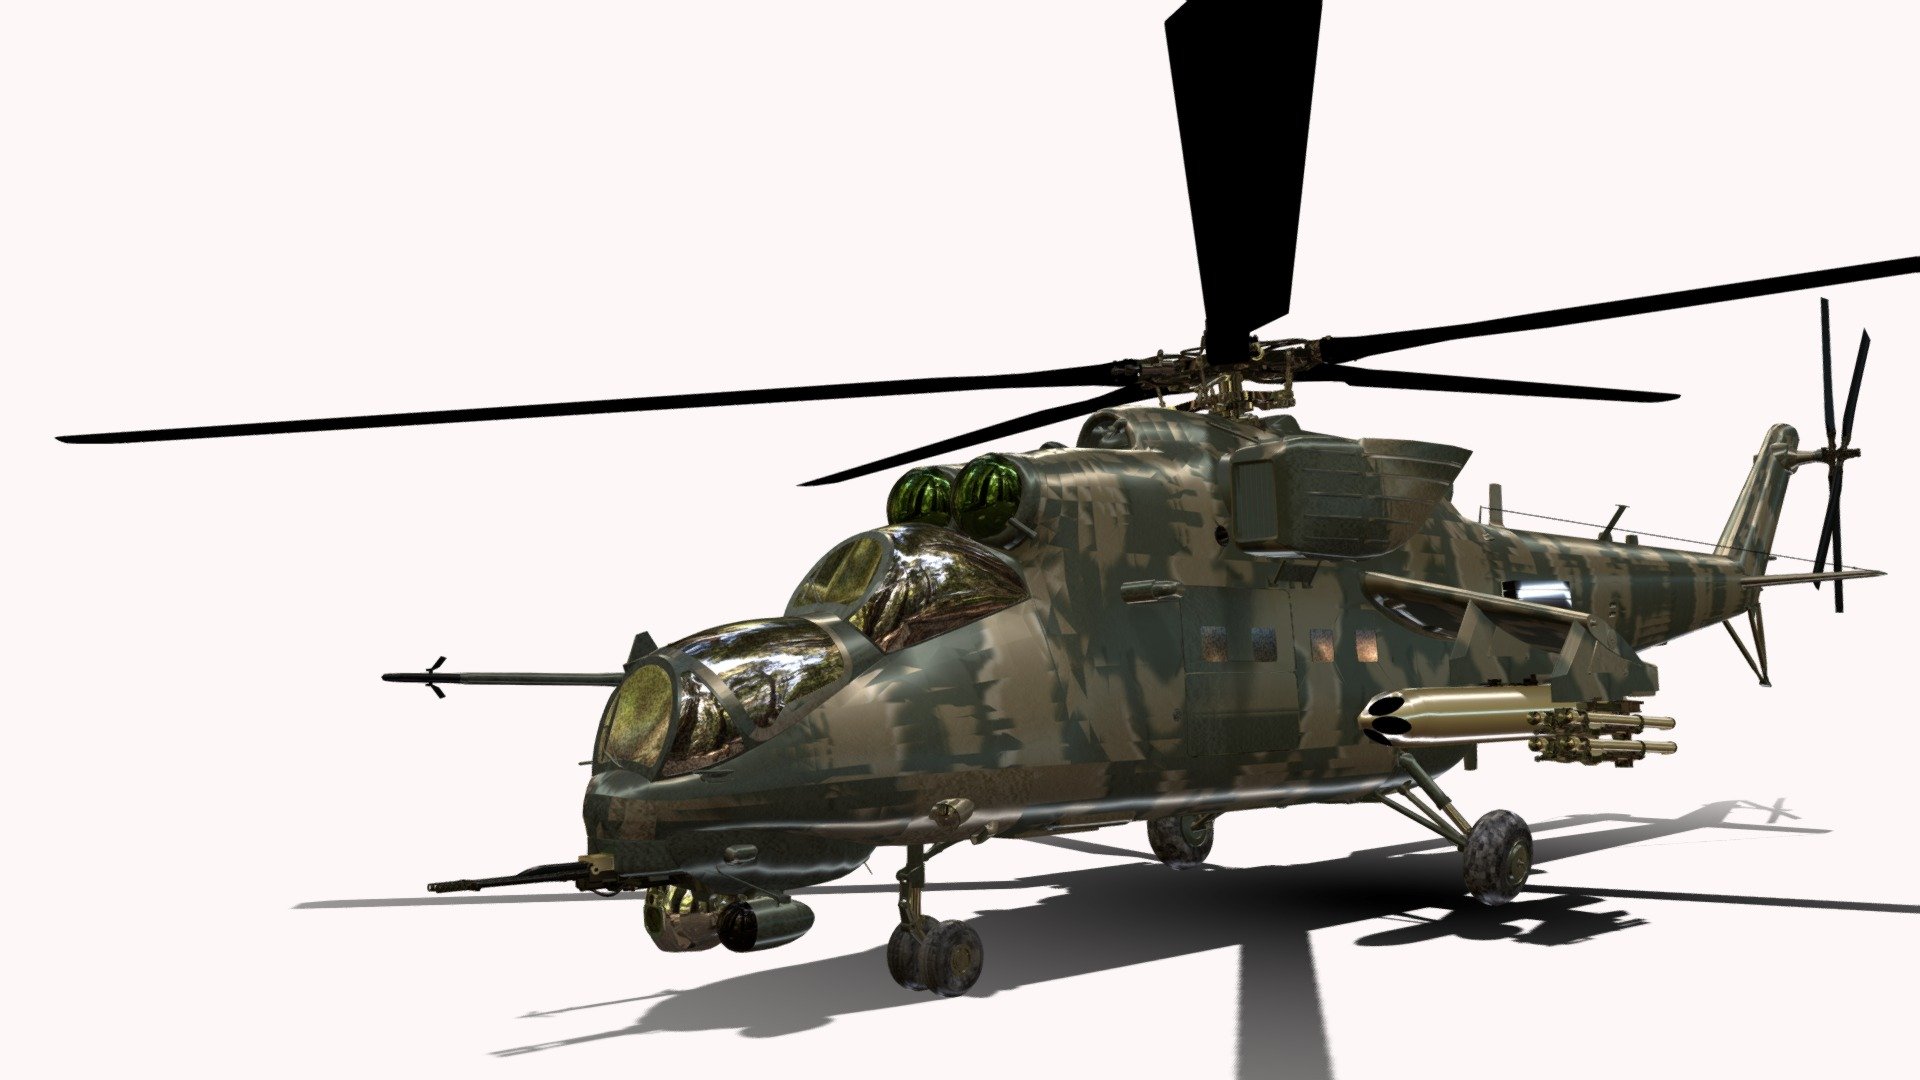 O Mil Mi-24 (Cirílico Миль Ми-24, designações da NATO &ldquo;Hind